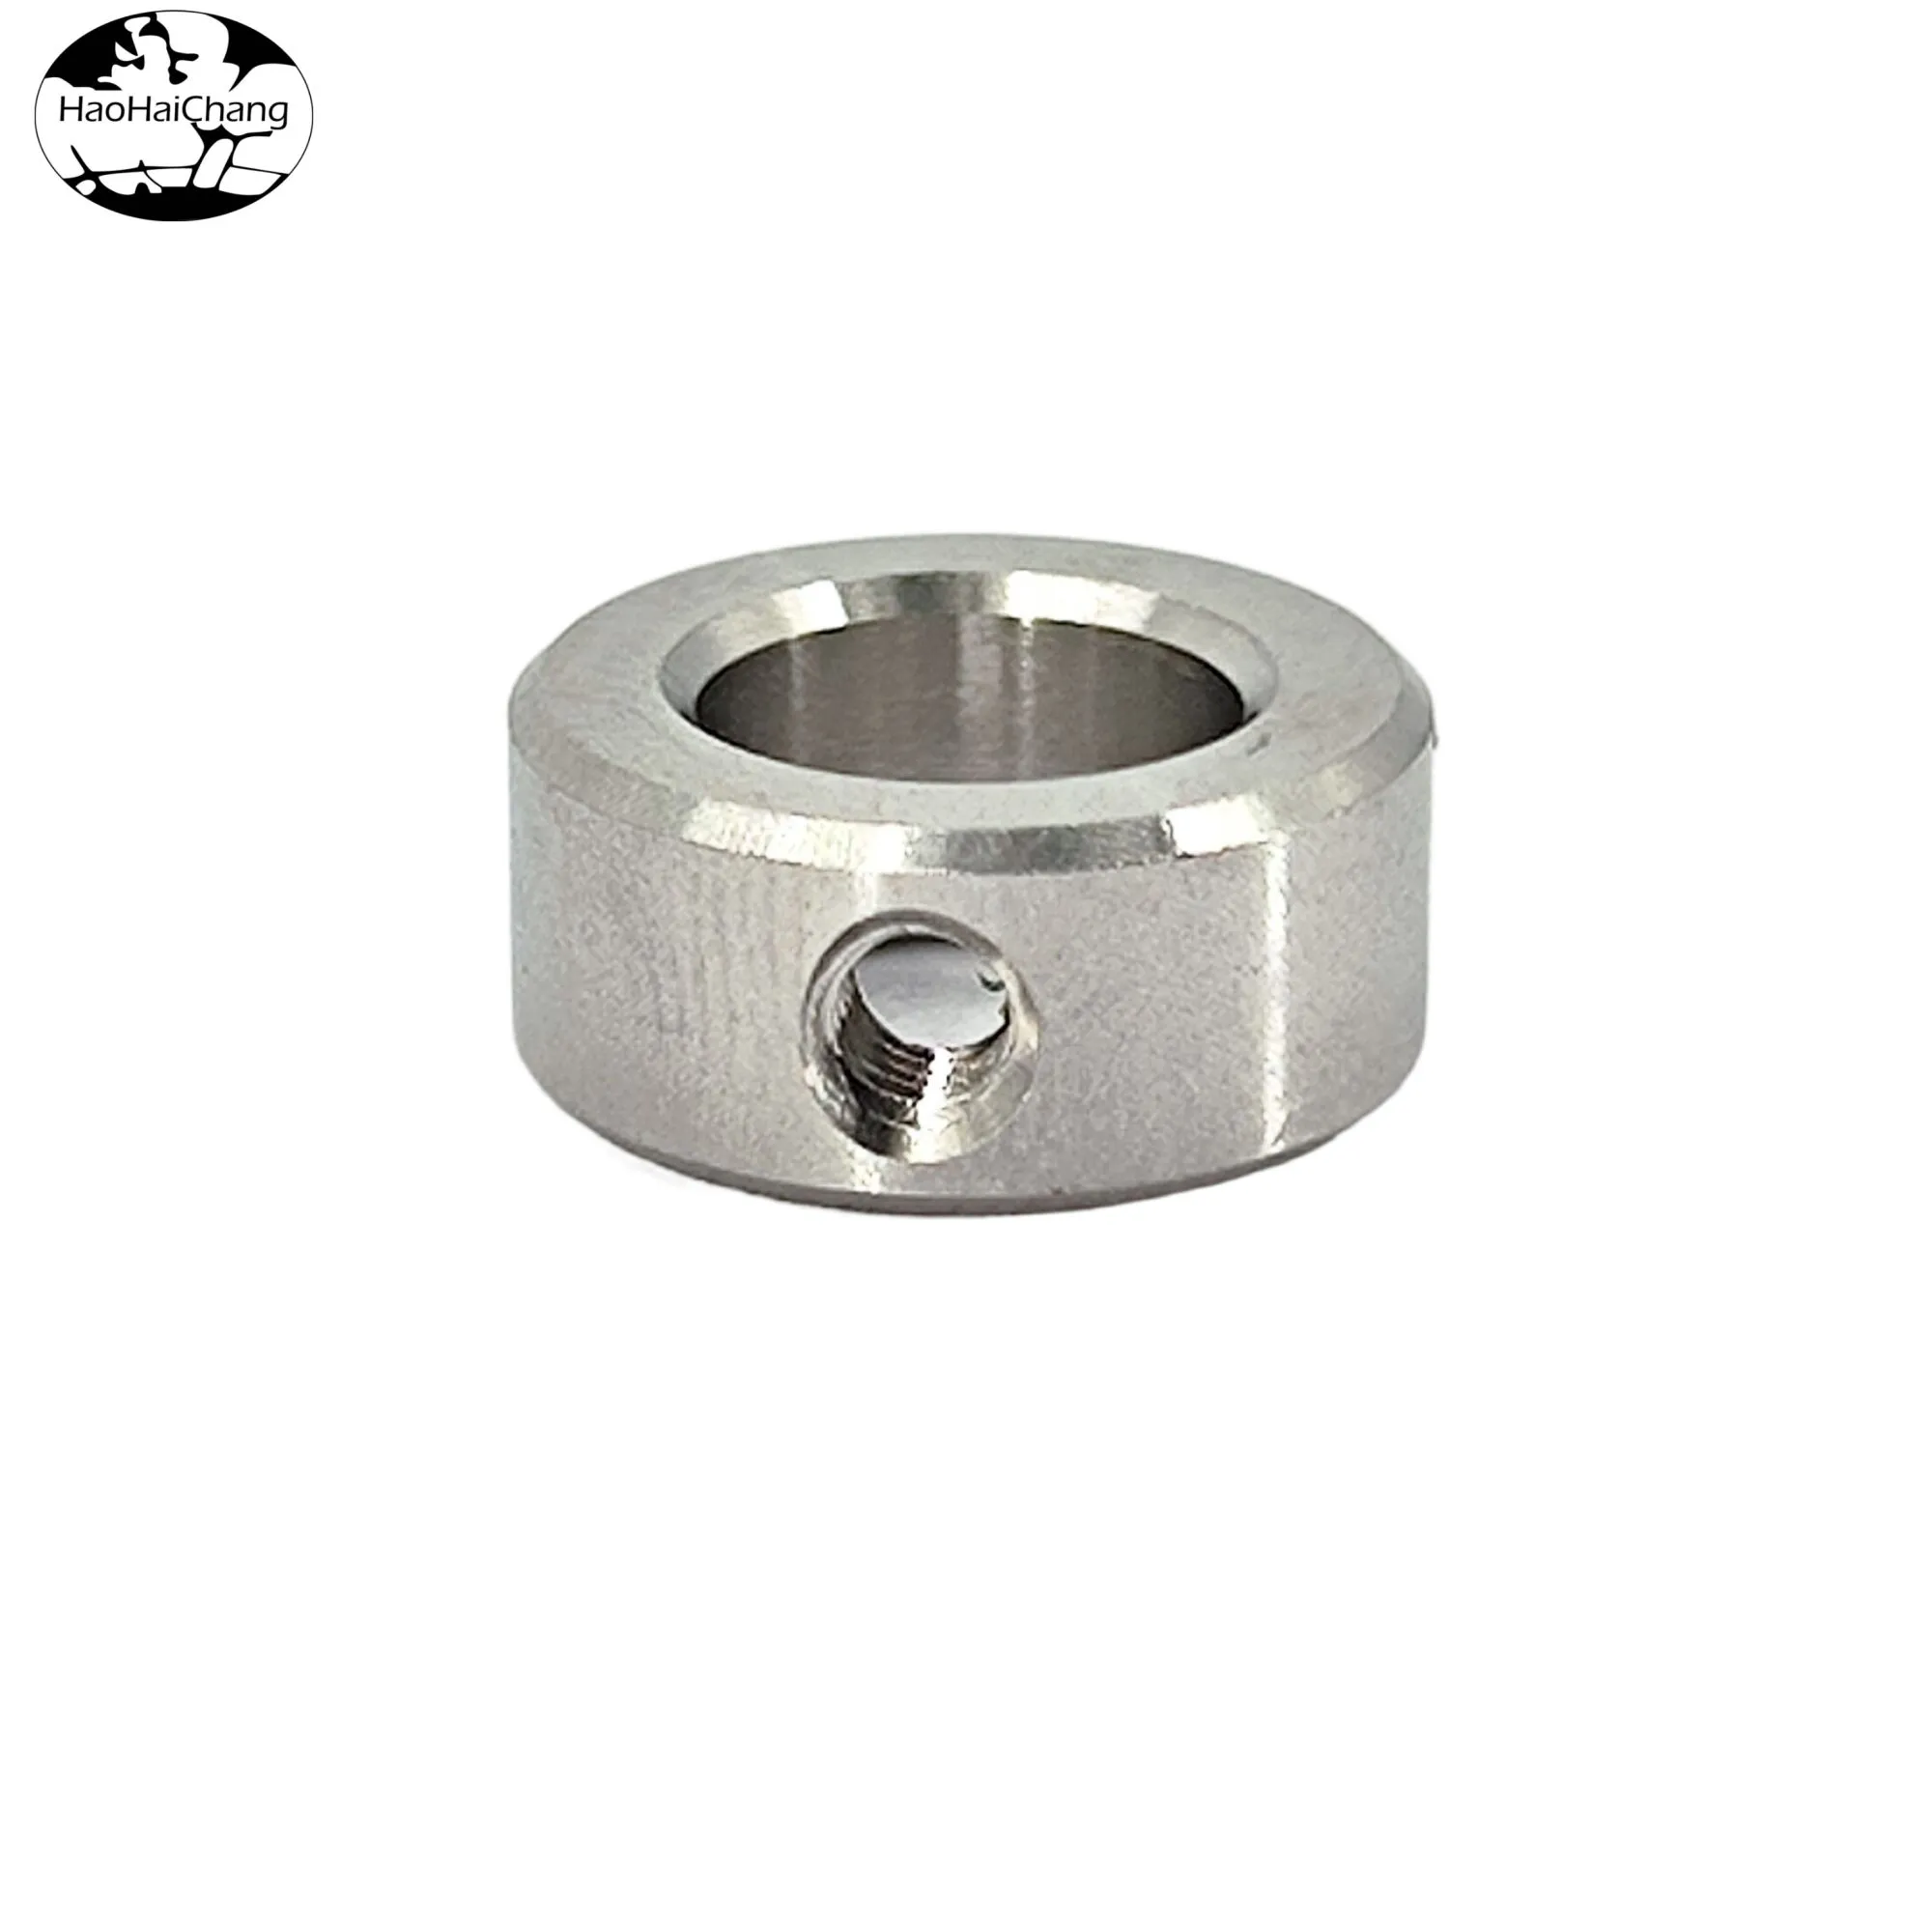 HHC-613 Single Side Thread Ring Lock Nut Side Hole Side Thread Nut